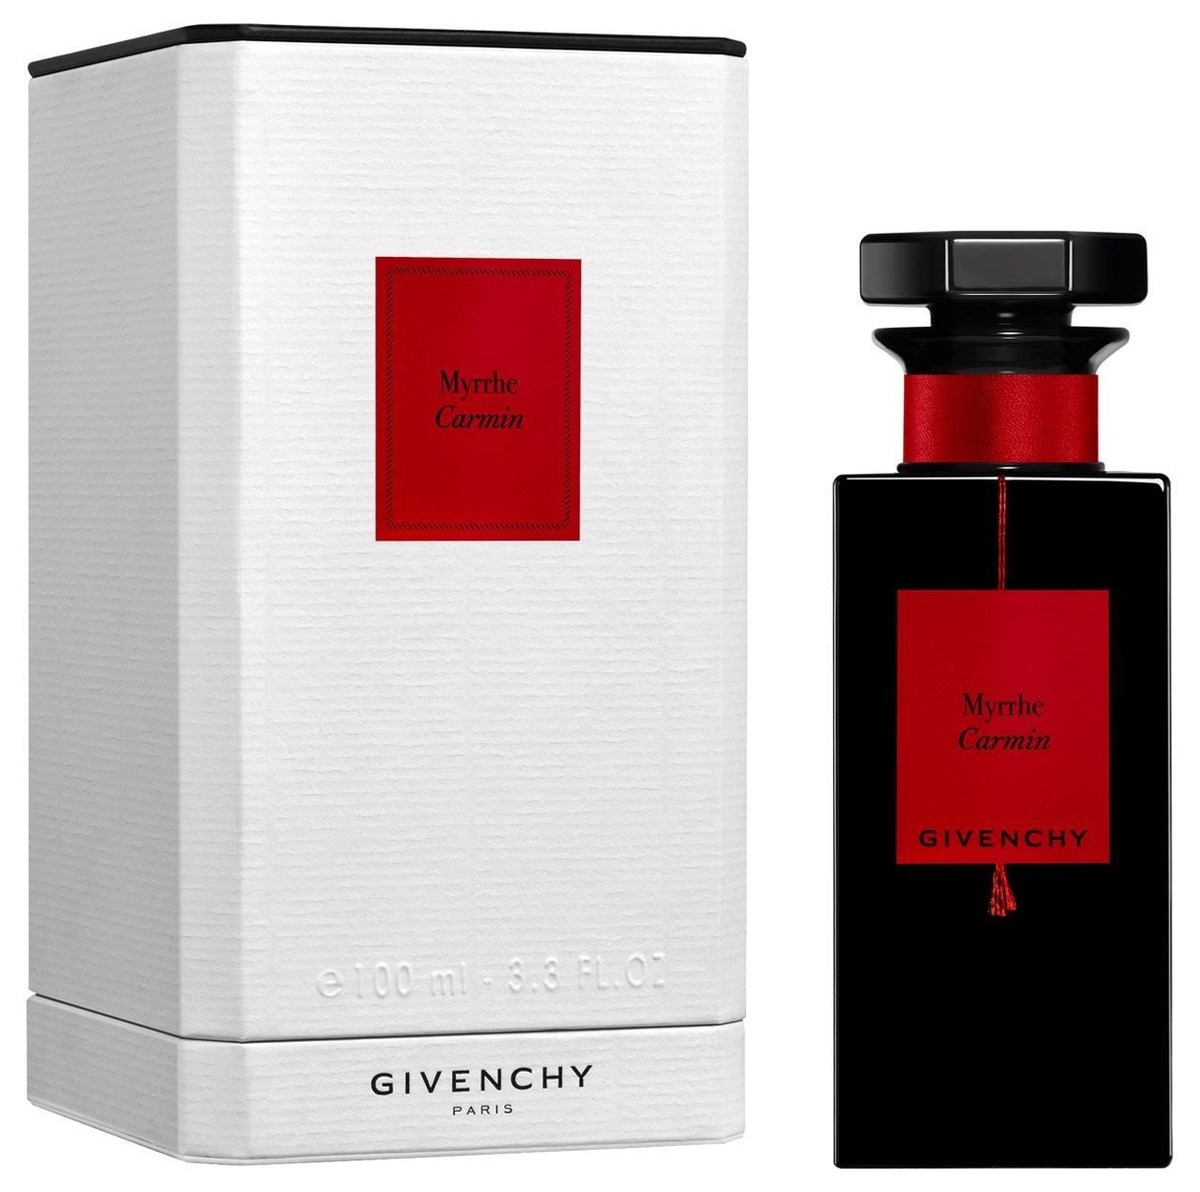 Myrrhe Carmin Givenchy perfume - a new 